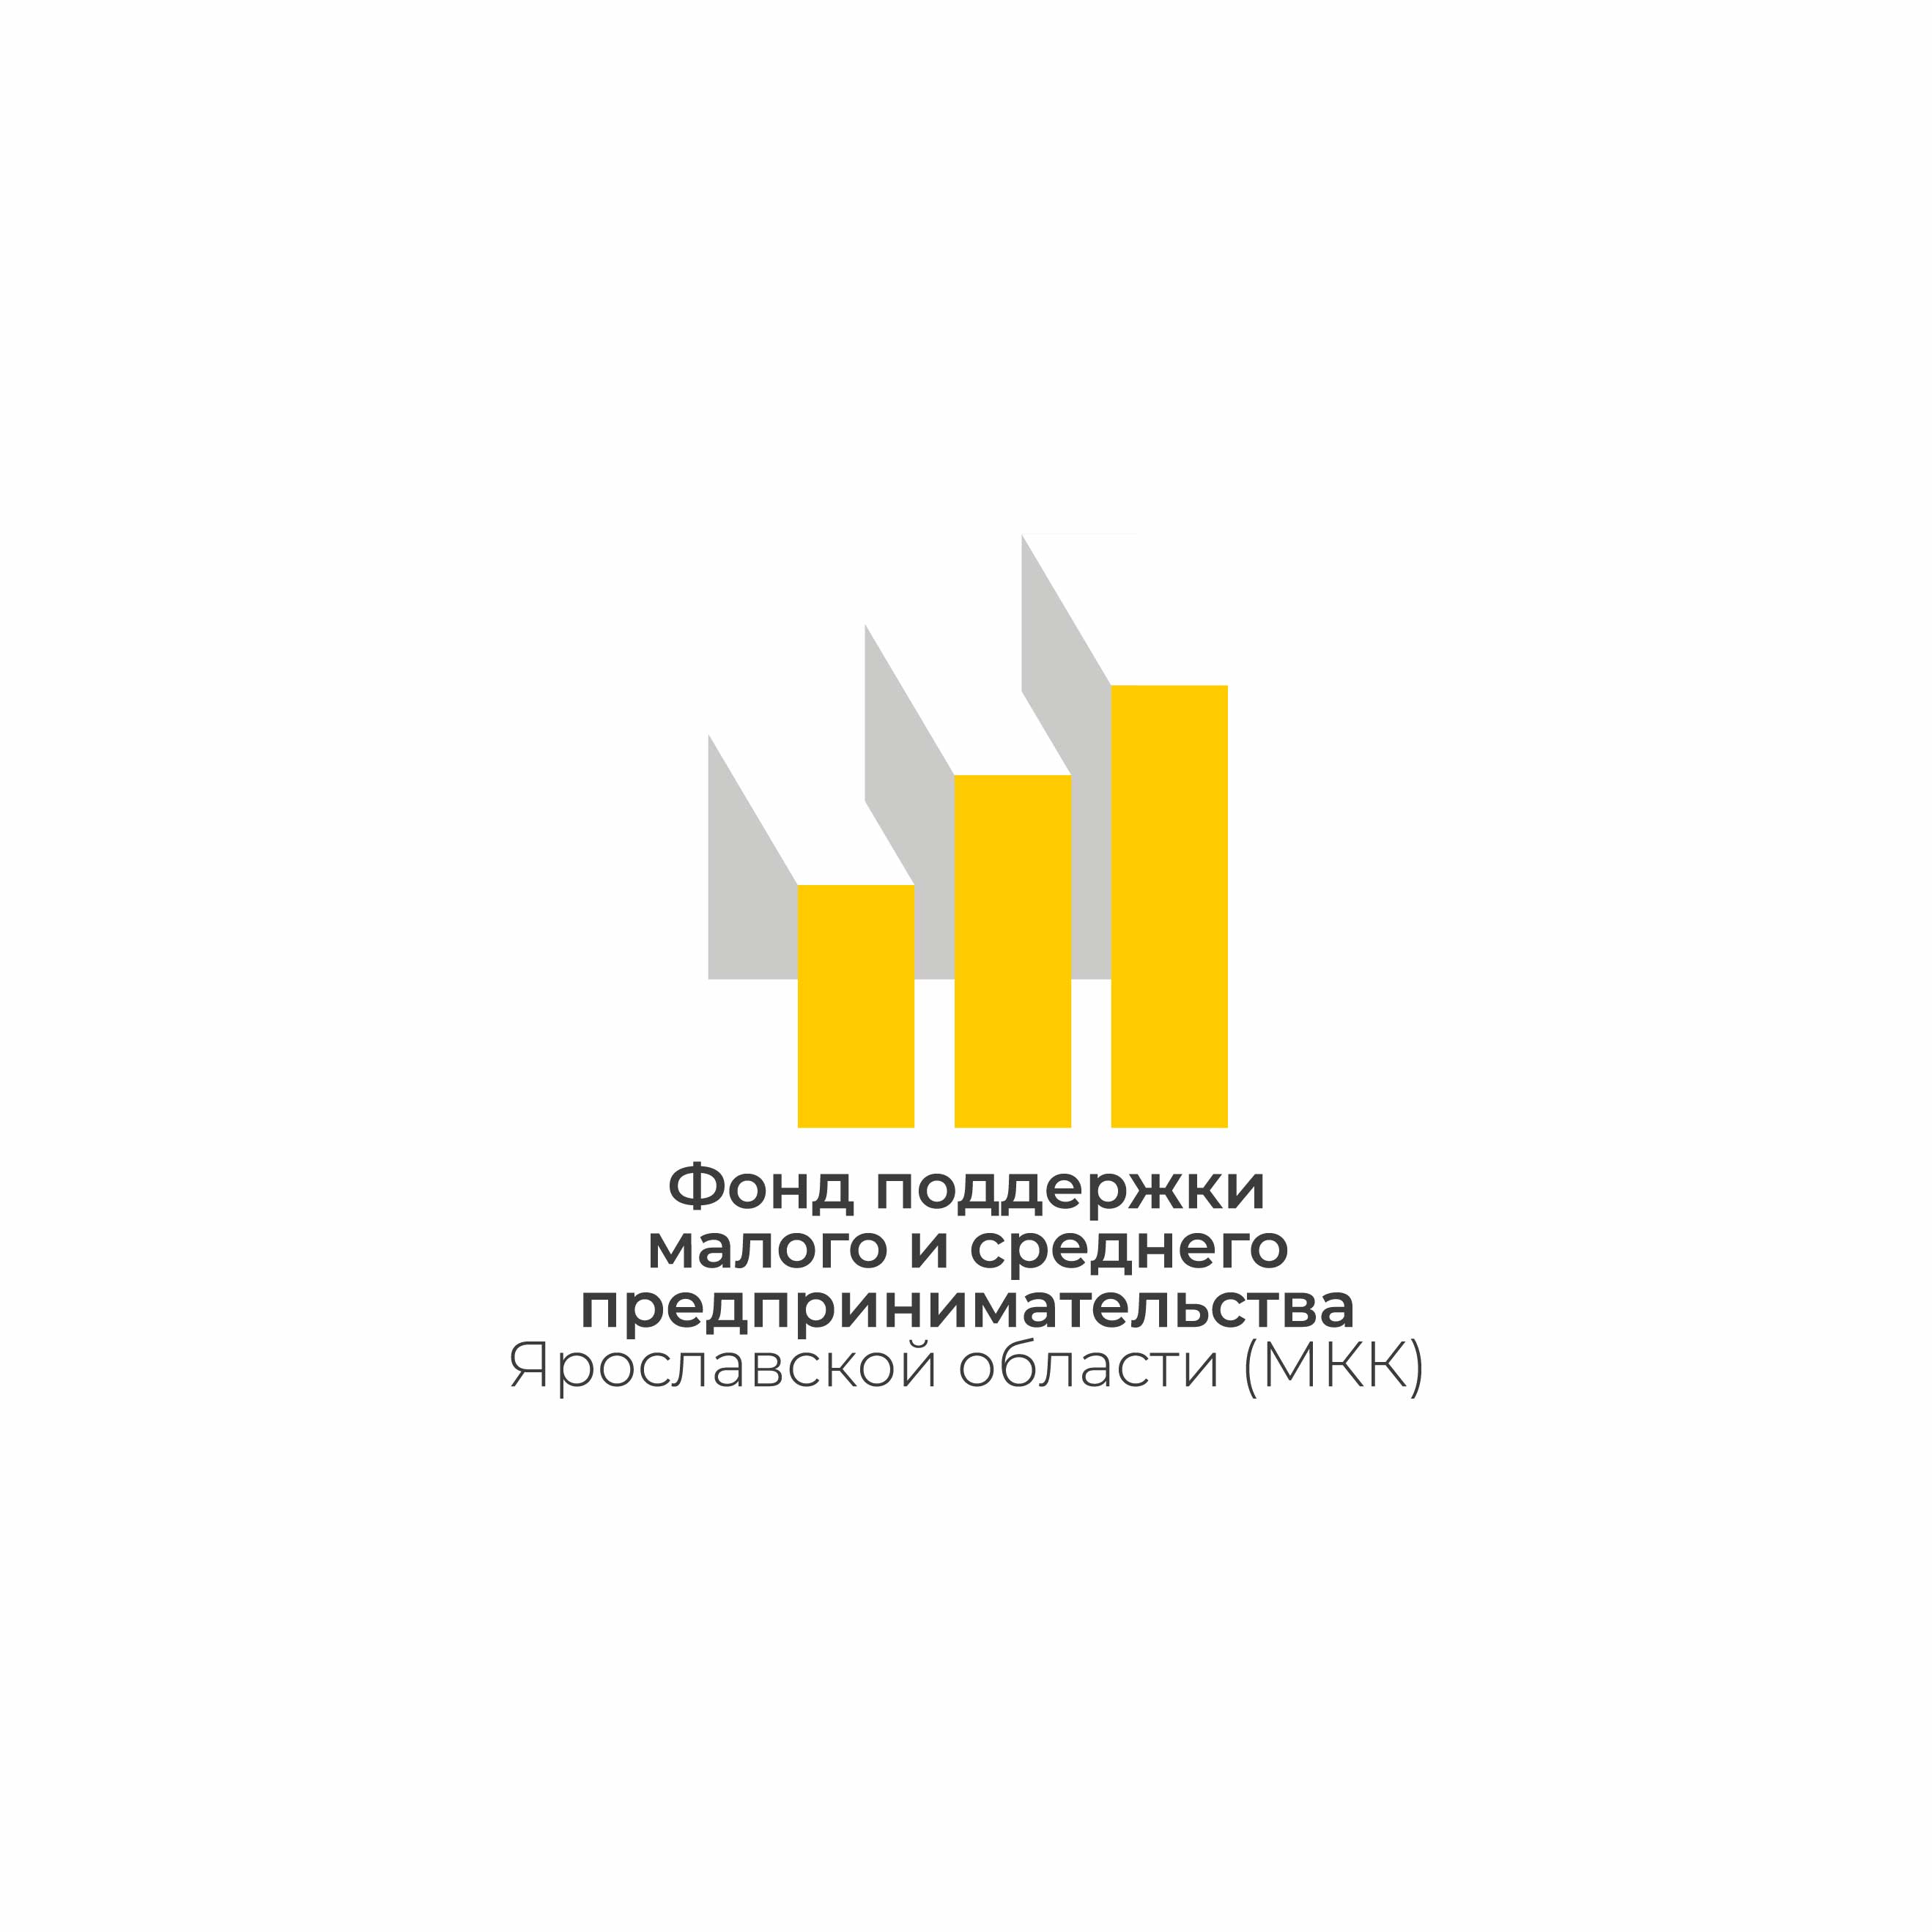 Фонд поддержки малого и среднего предпринимательства Ярославской области